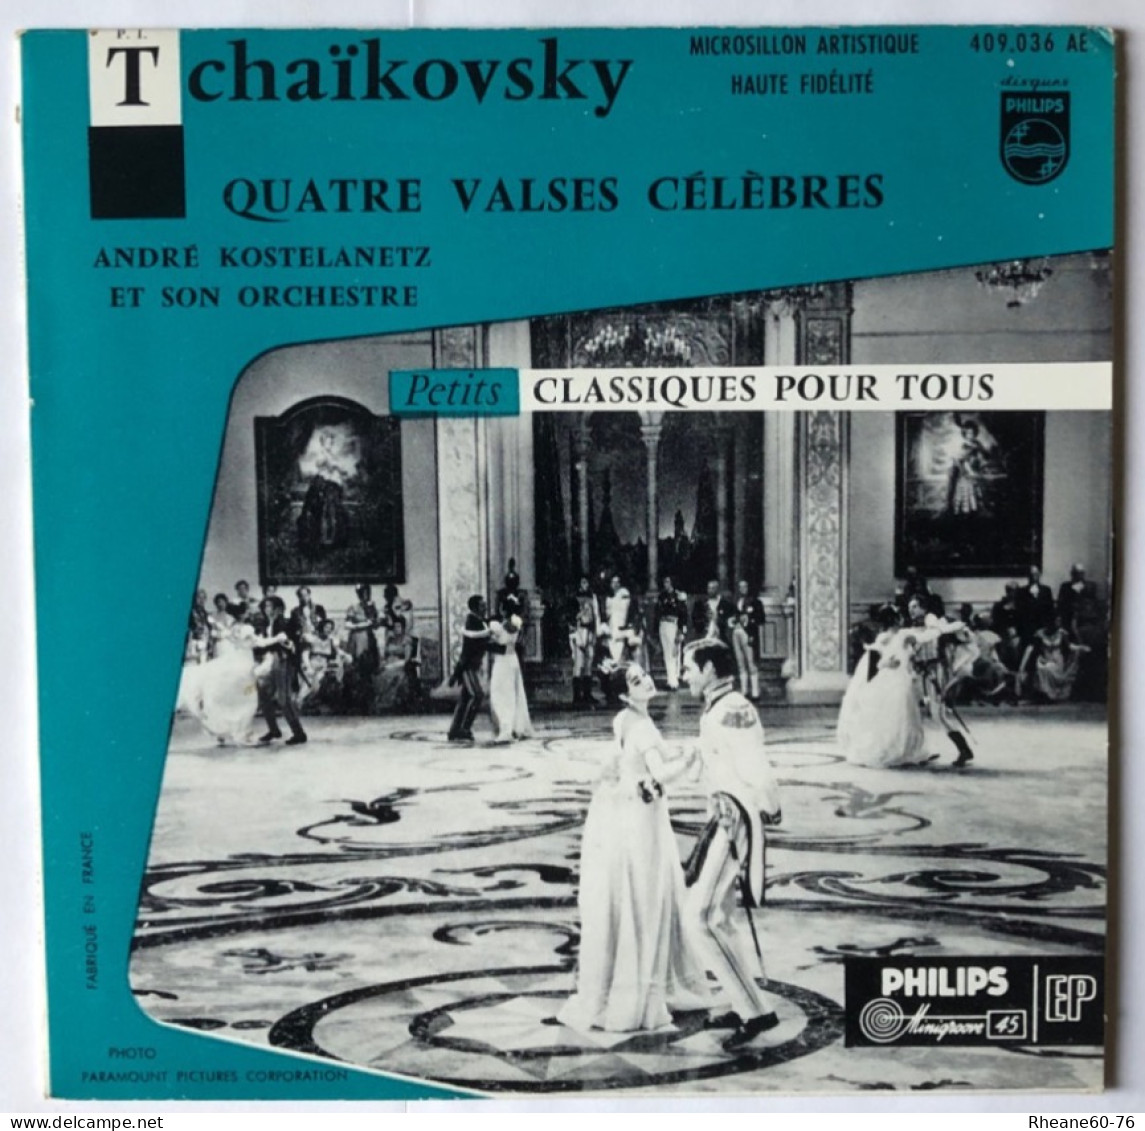 Philips 409.036 AE - 45T EP - Tchaïkovsky 4 Valses A Kostelanetz Et Son Orchestre- Microsillon Artistique Haute Fidélité - Spezialformate